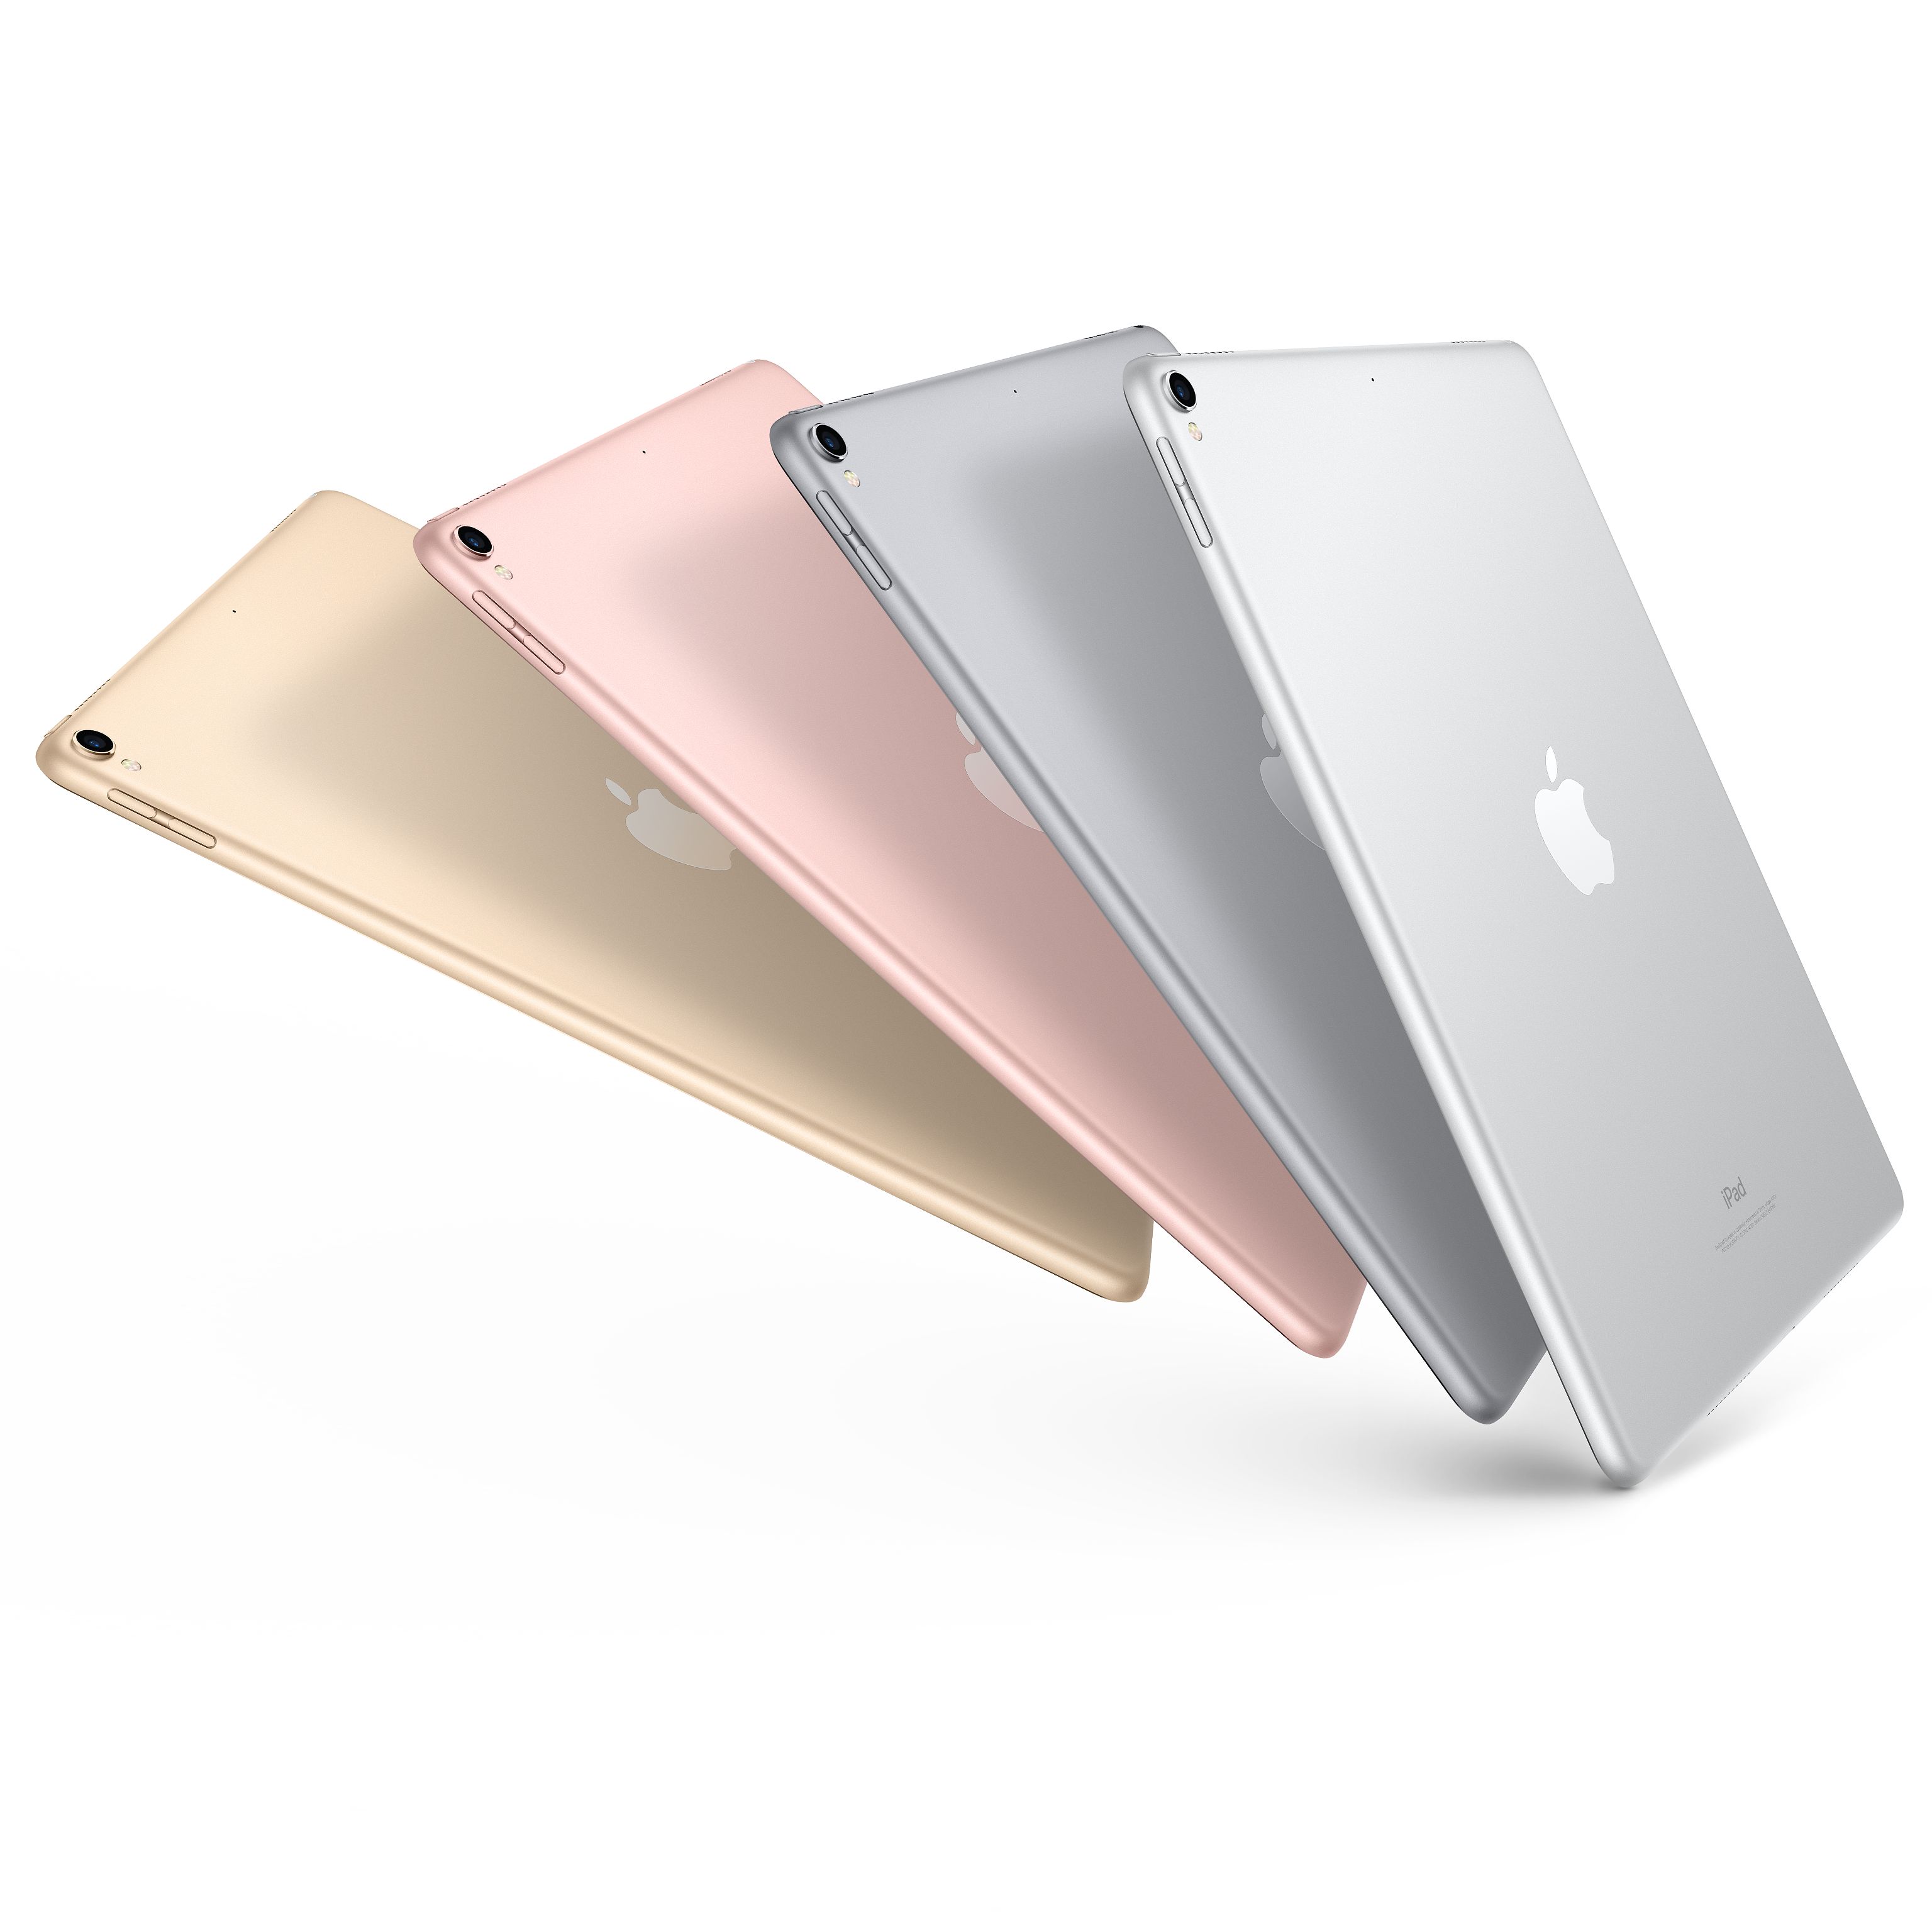 苹果(Apple) iPad pro 新款10.5英寸平板电脑 银色256GB WLAN版MPF02CH/A